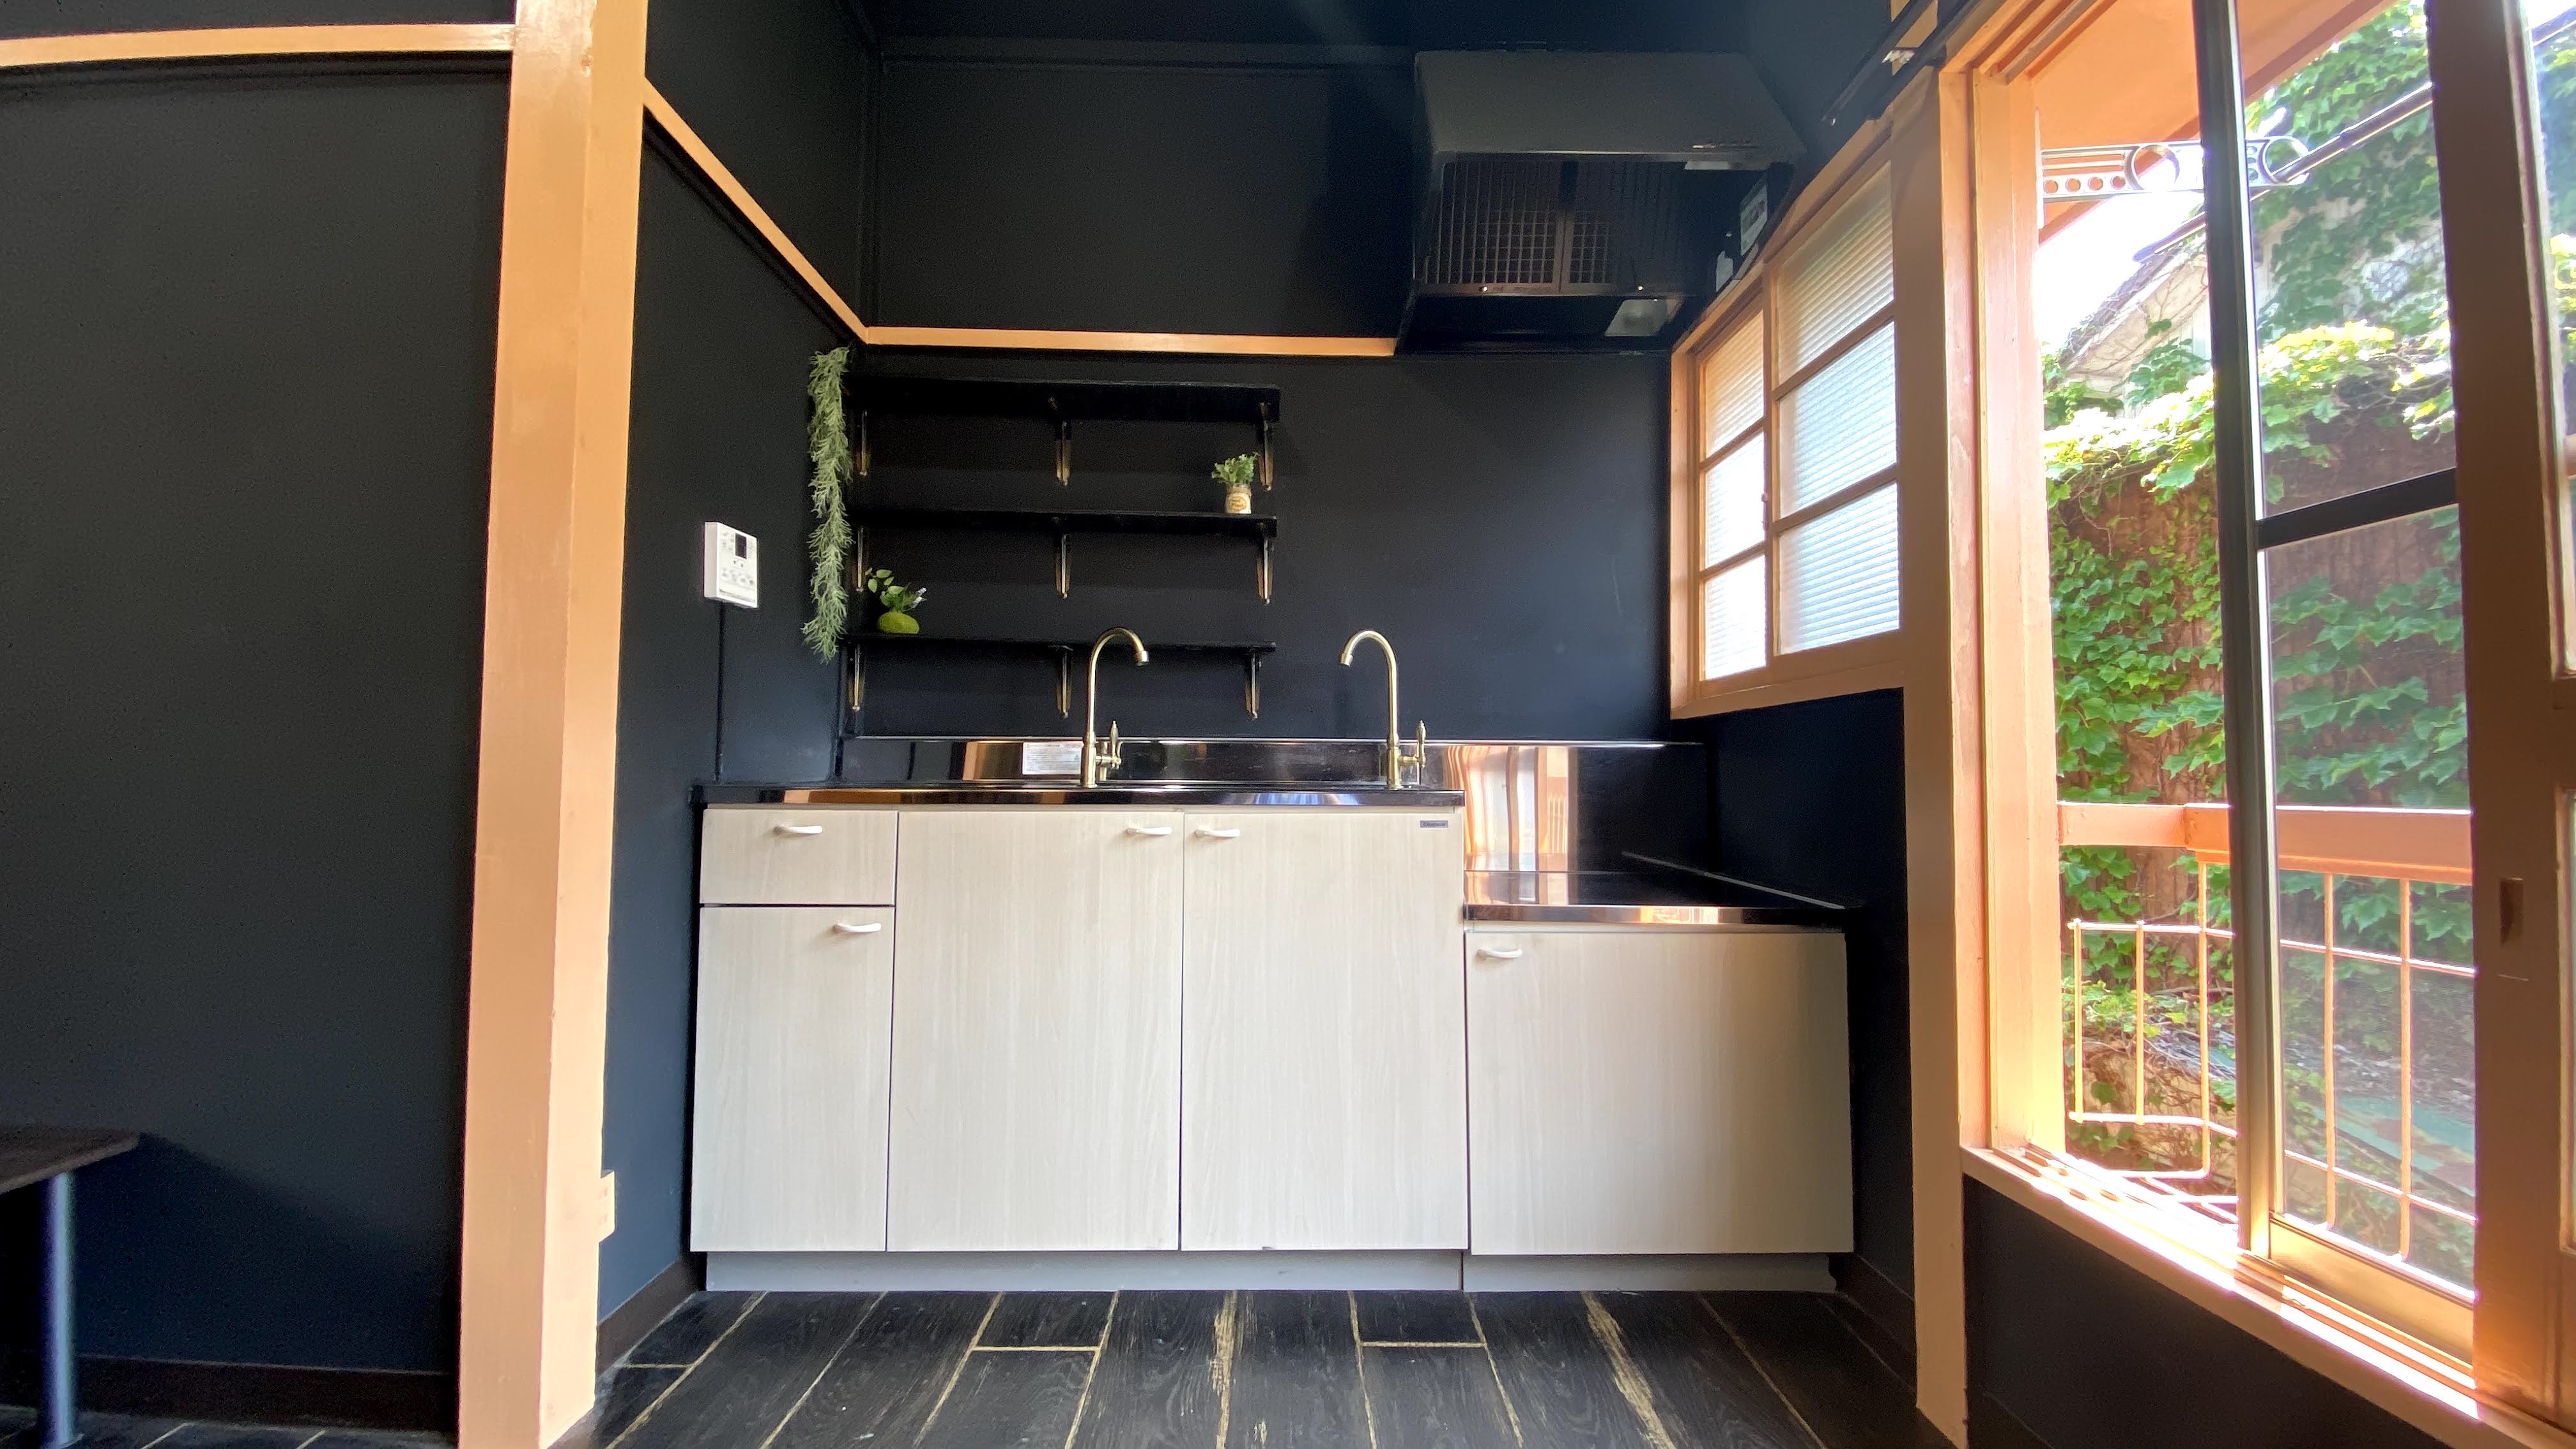 キッチン。壁の黒と建具類のオレンジが印象的